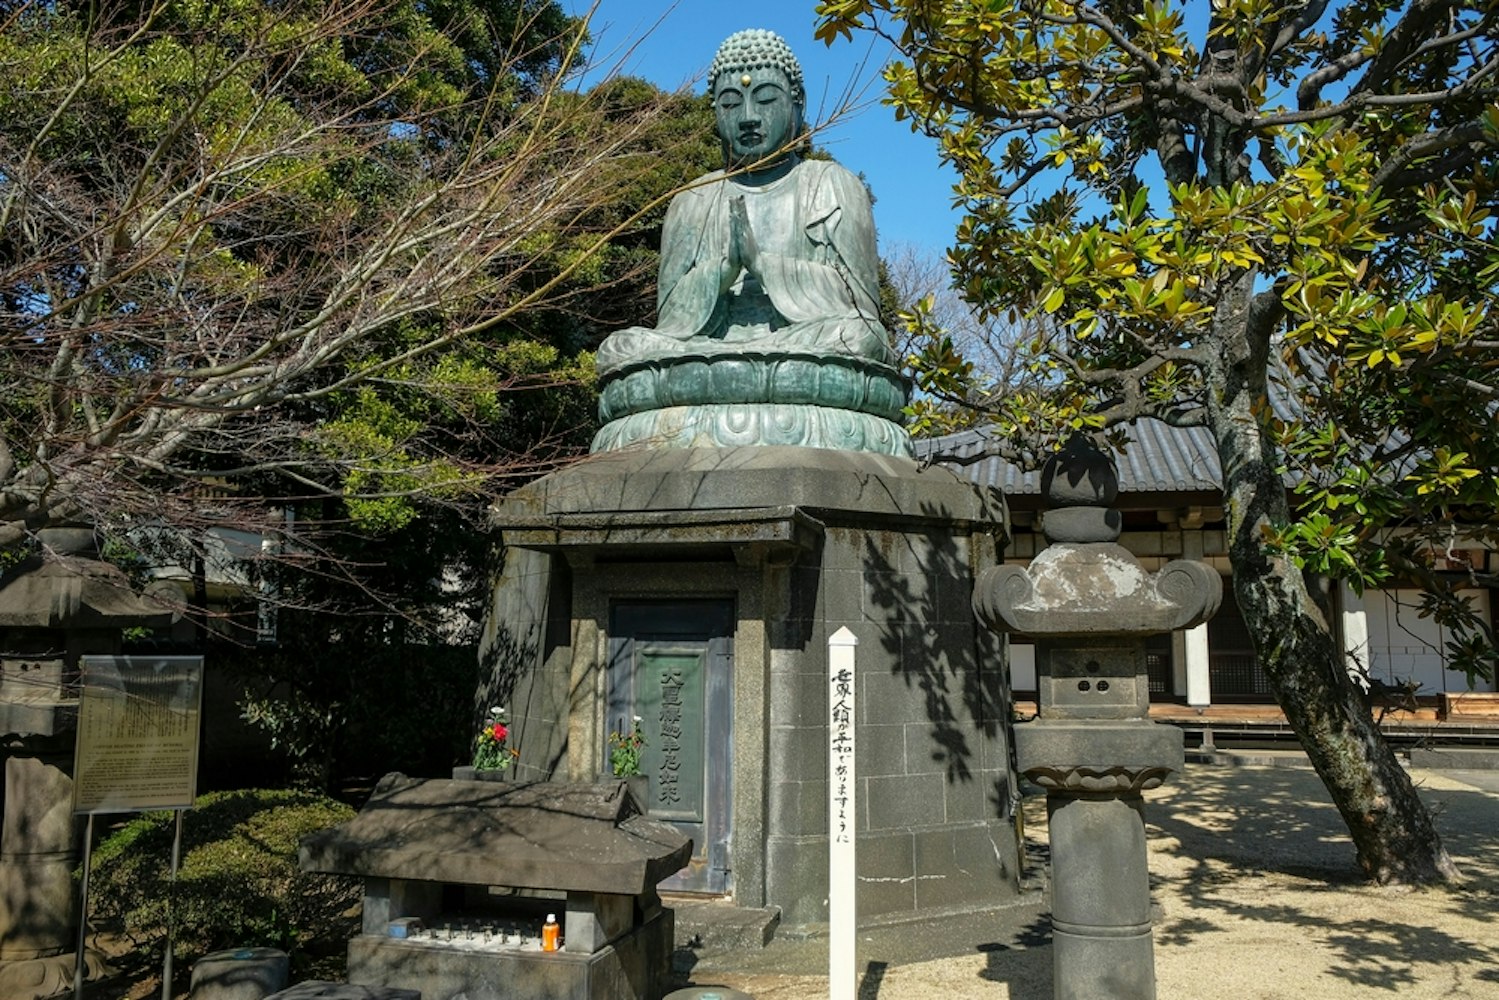 Tennoji Daibutsu at Tennoji Temple